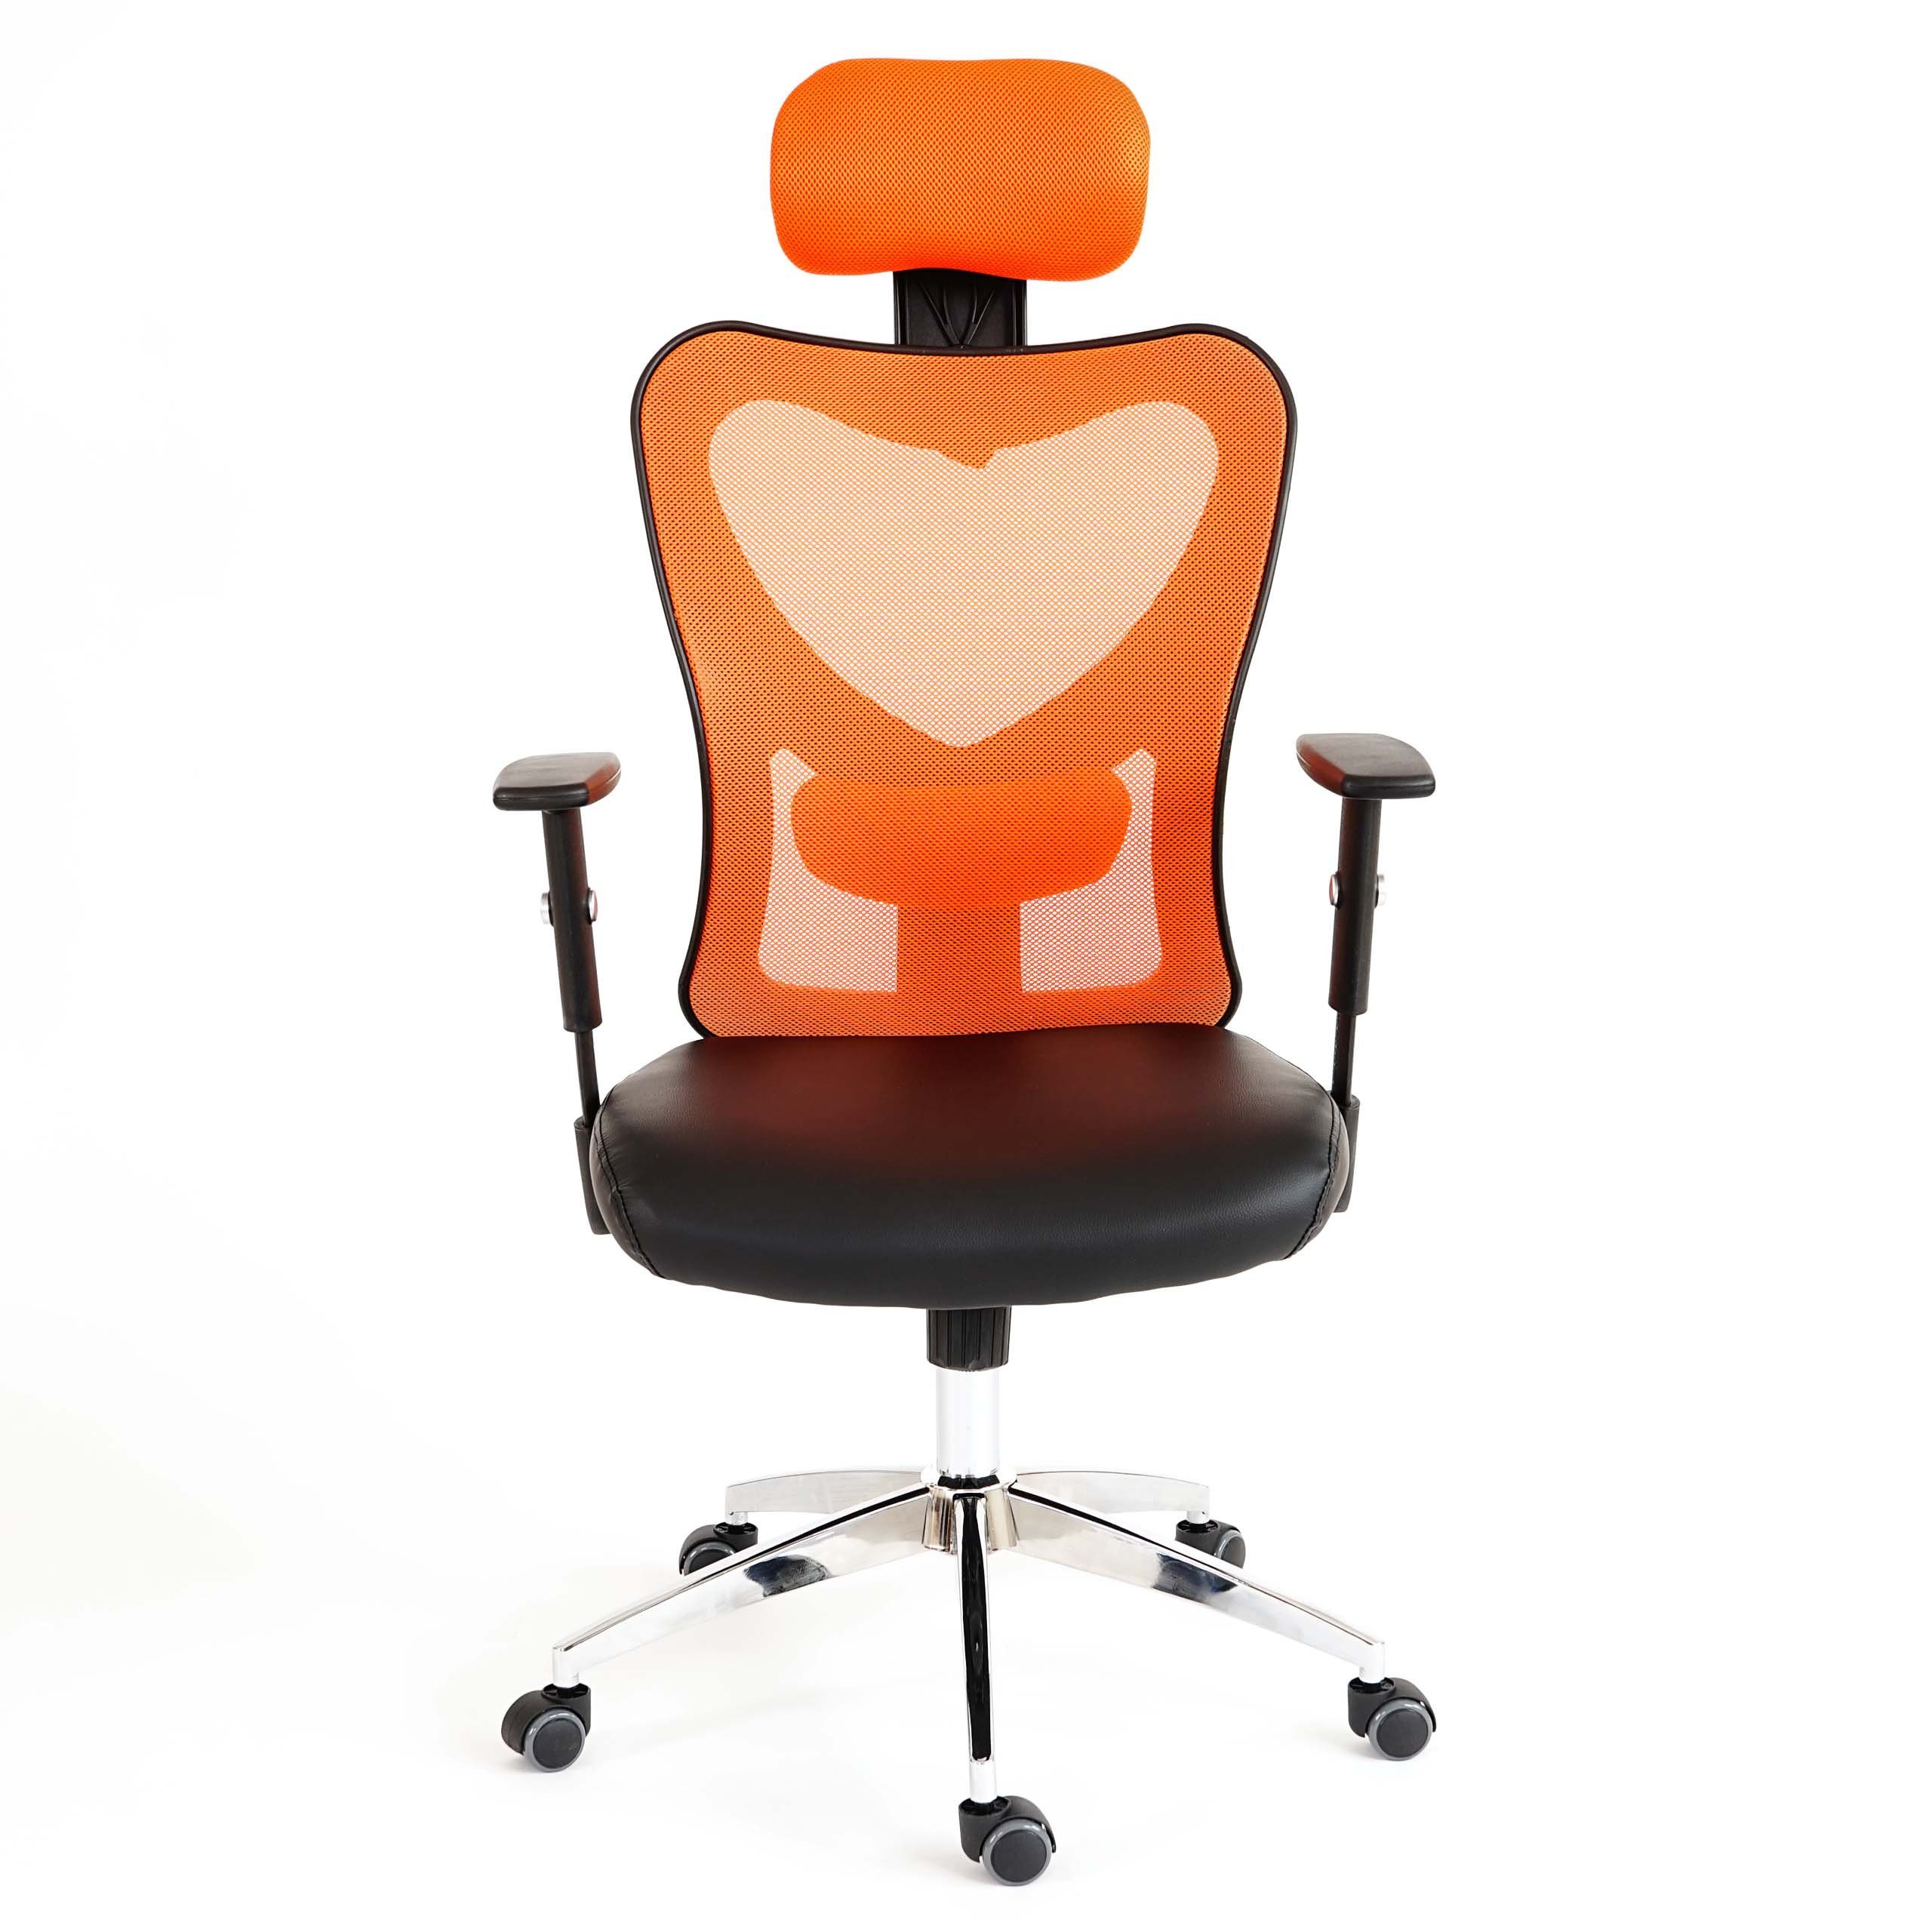 Kopfstütze Schreibtischstuhl höhenverstellbar, schwarz,orange Armlehnen, stufenlos Kopfstütze MCW Pamplona, Höhenverstellbare flexible Lendenwirbelstütze +